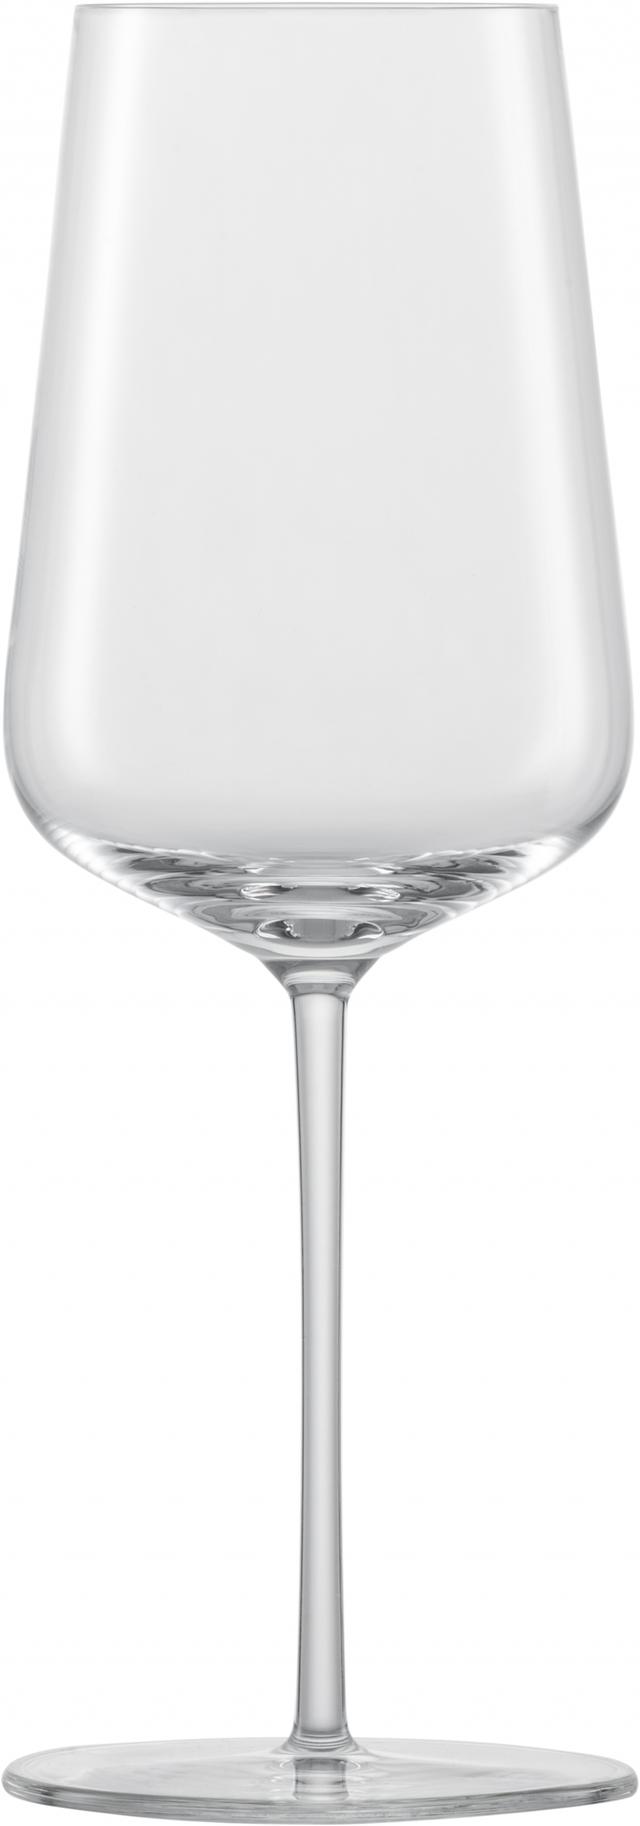 zwiesel glas vervino chardonnay wijnglas mp 1 - 0.487 ltr - geschenkverpakking 2 glazen